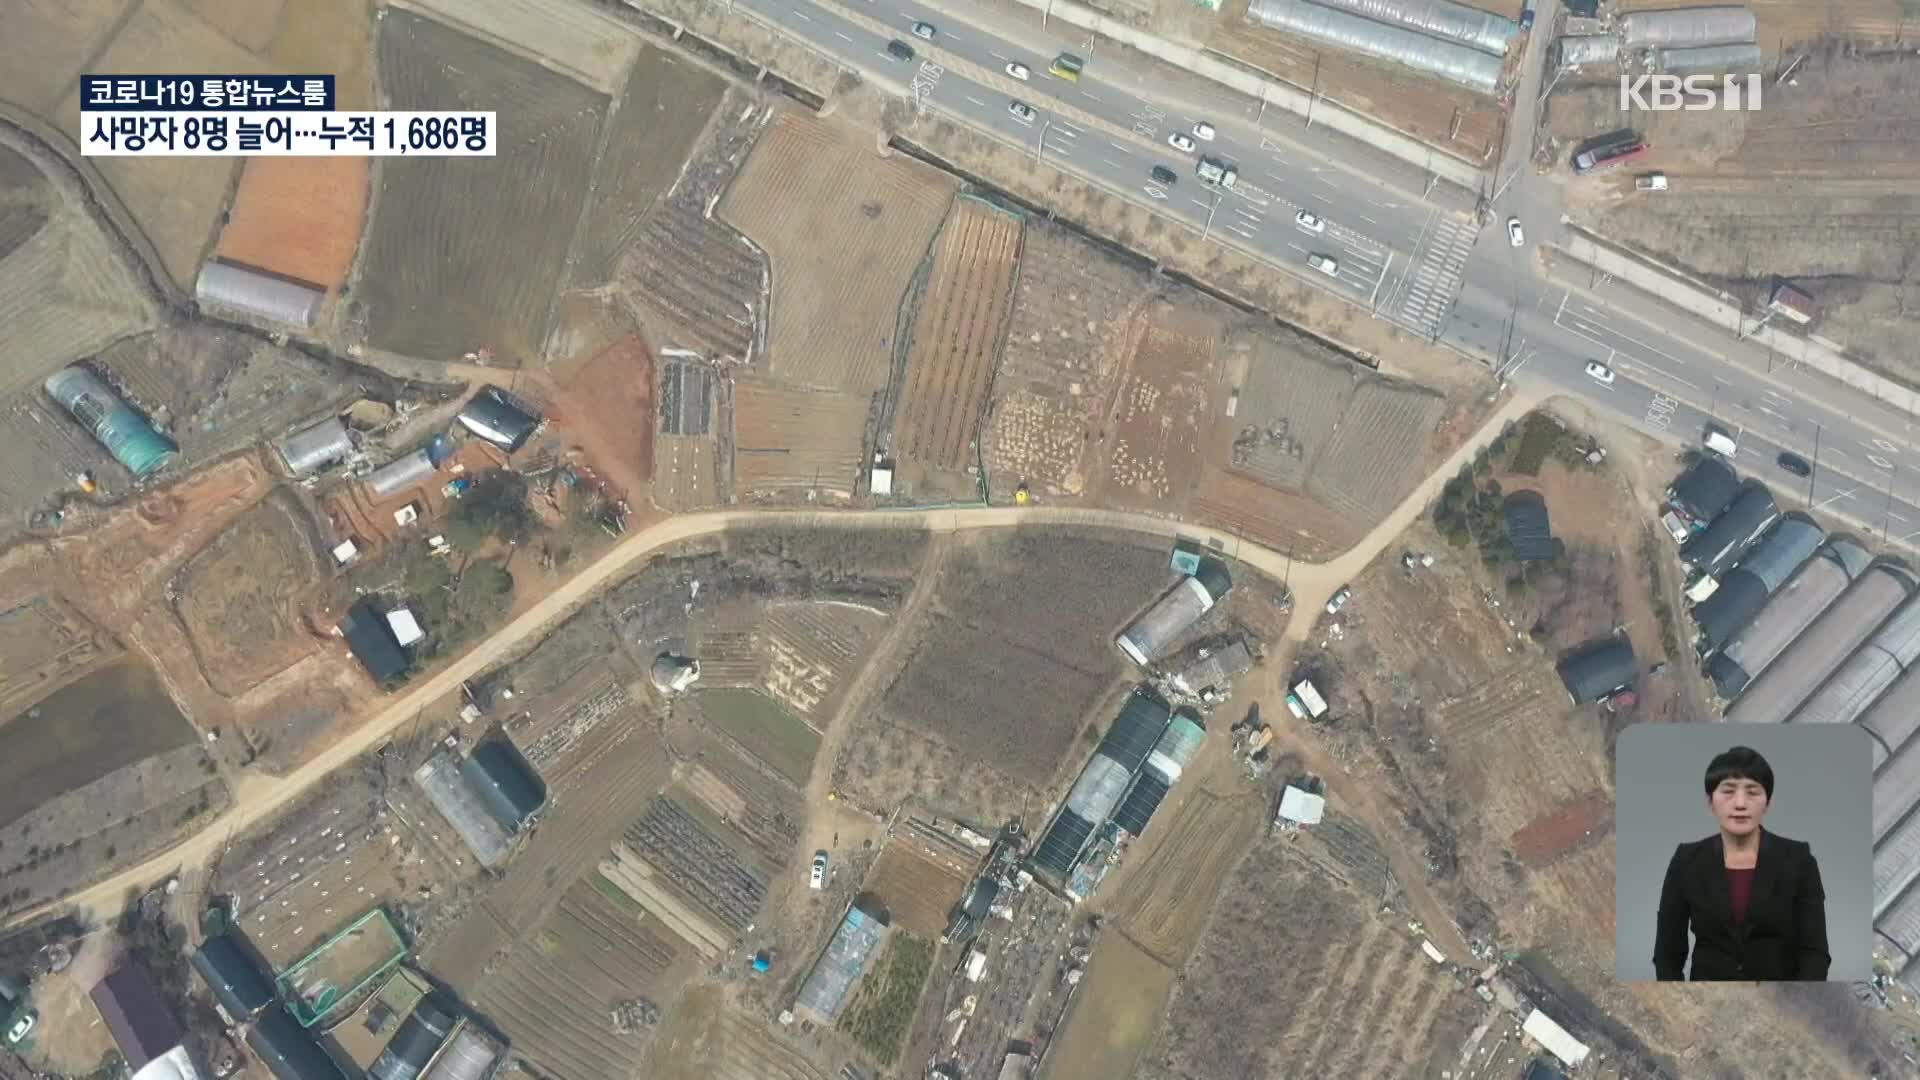 “시흥 3기 신도시 ‘농지 투기’ 의심 사례 37건 발견”